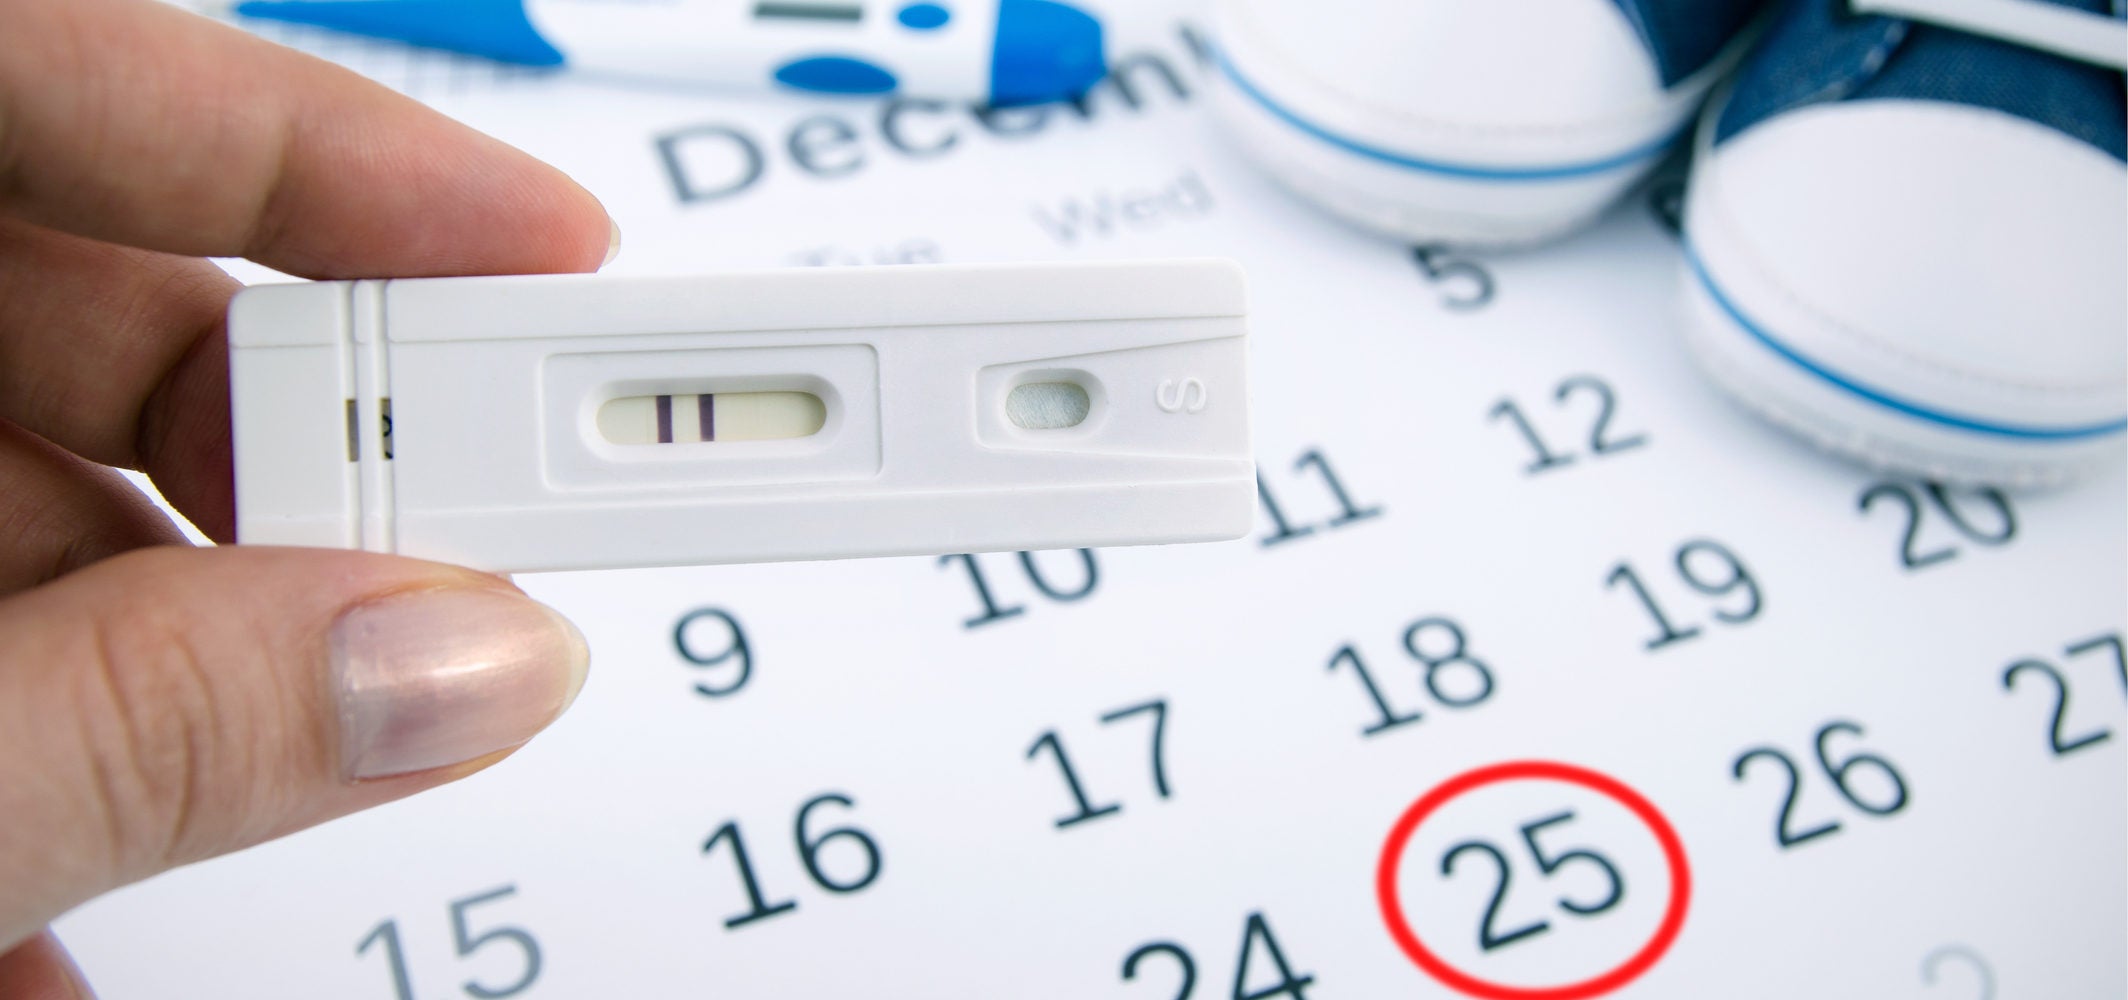 Calculadora de Gravidez - Aprenda como calcular a data de nascimento do bebê